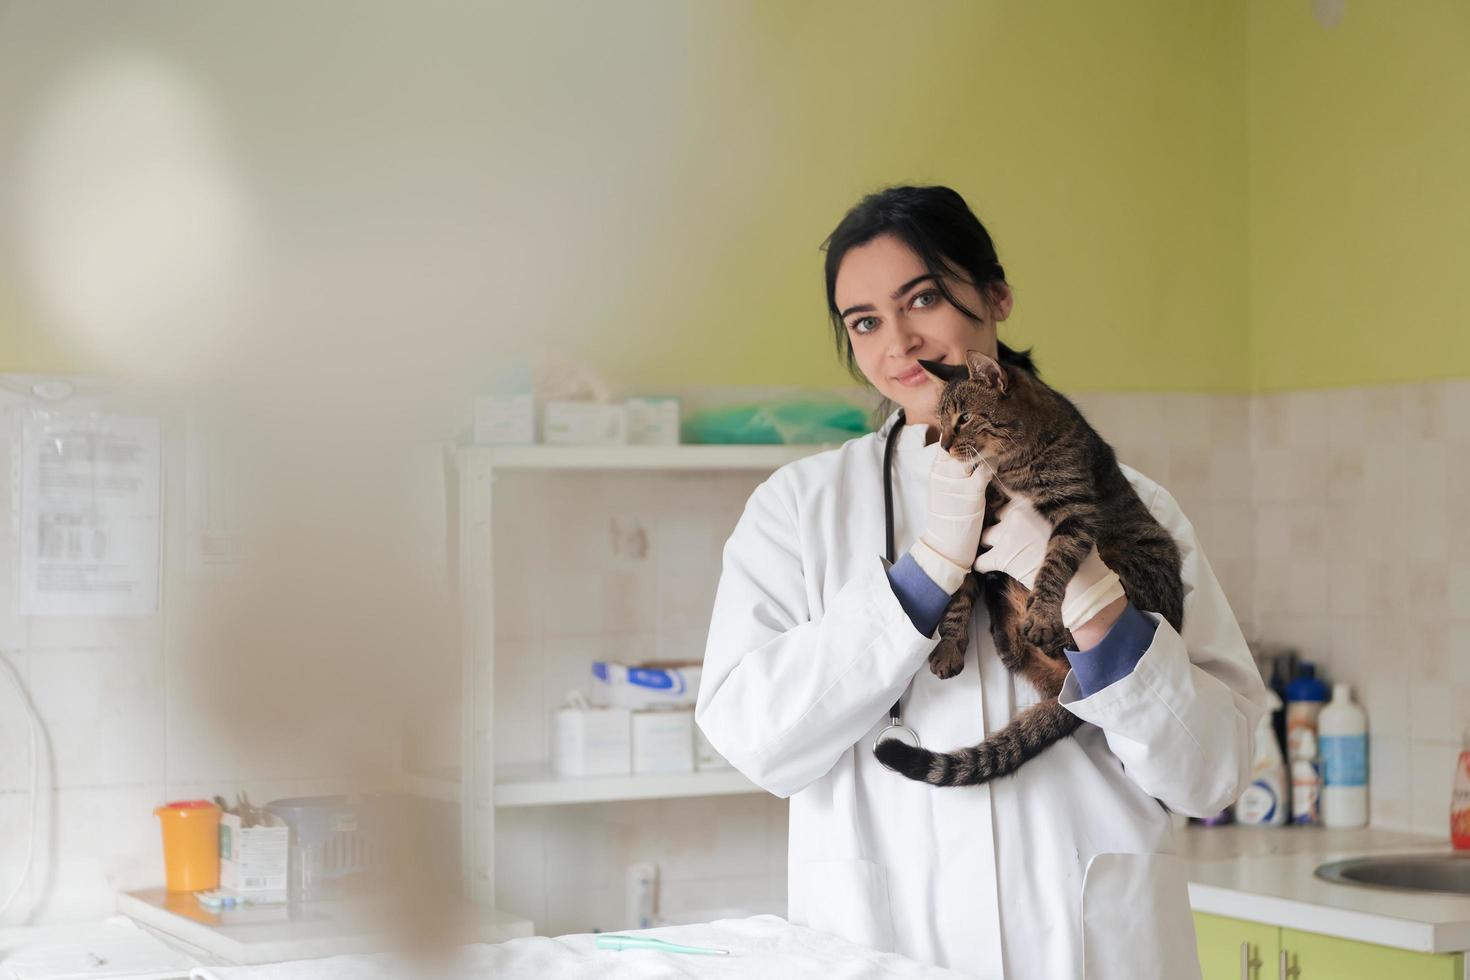 clínica veterinaria. retrato de una doctora en el hospital de animales sosteniendo un lindo gato enfermo foto